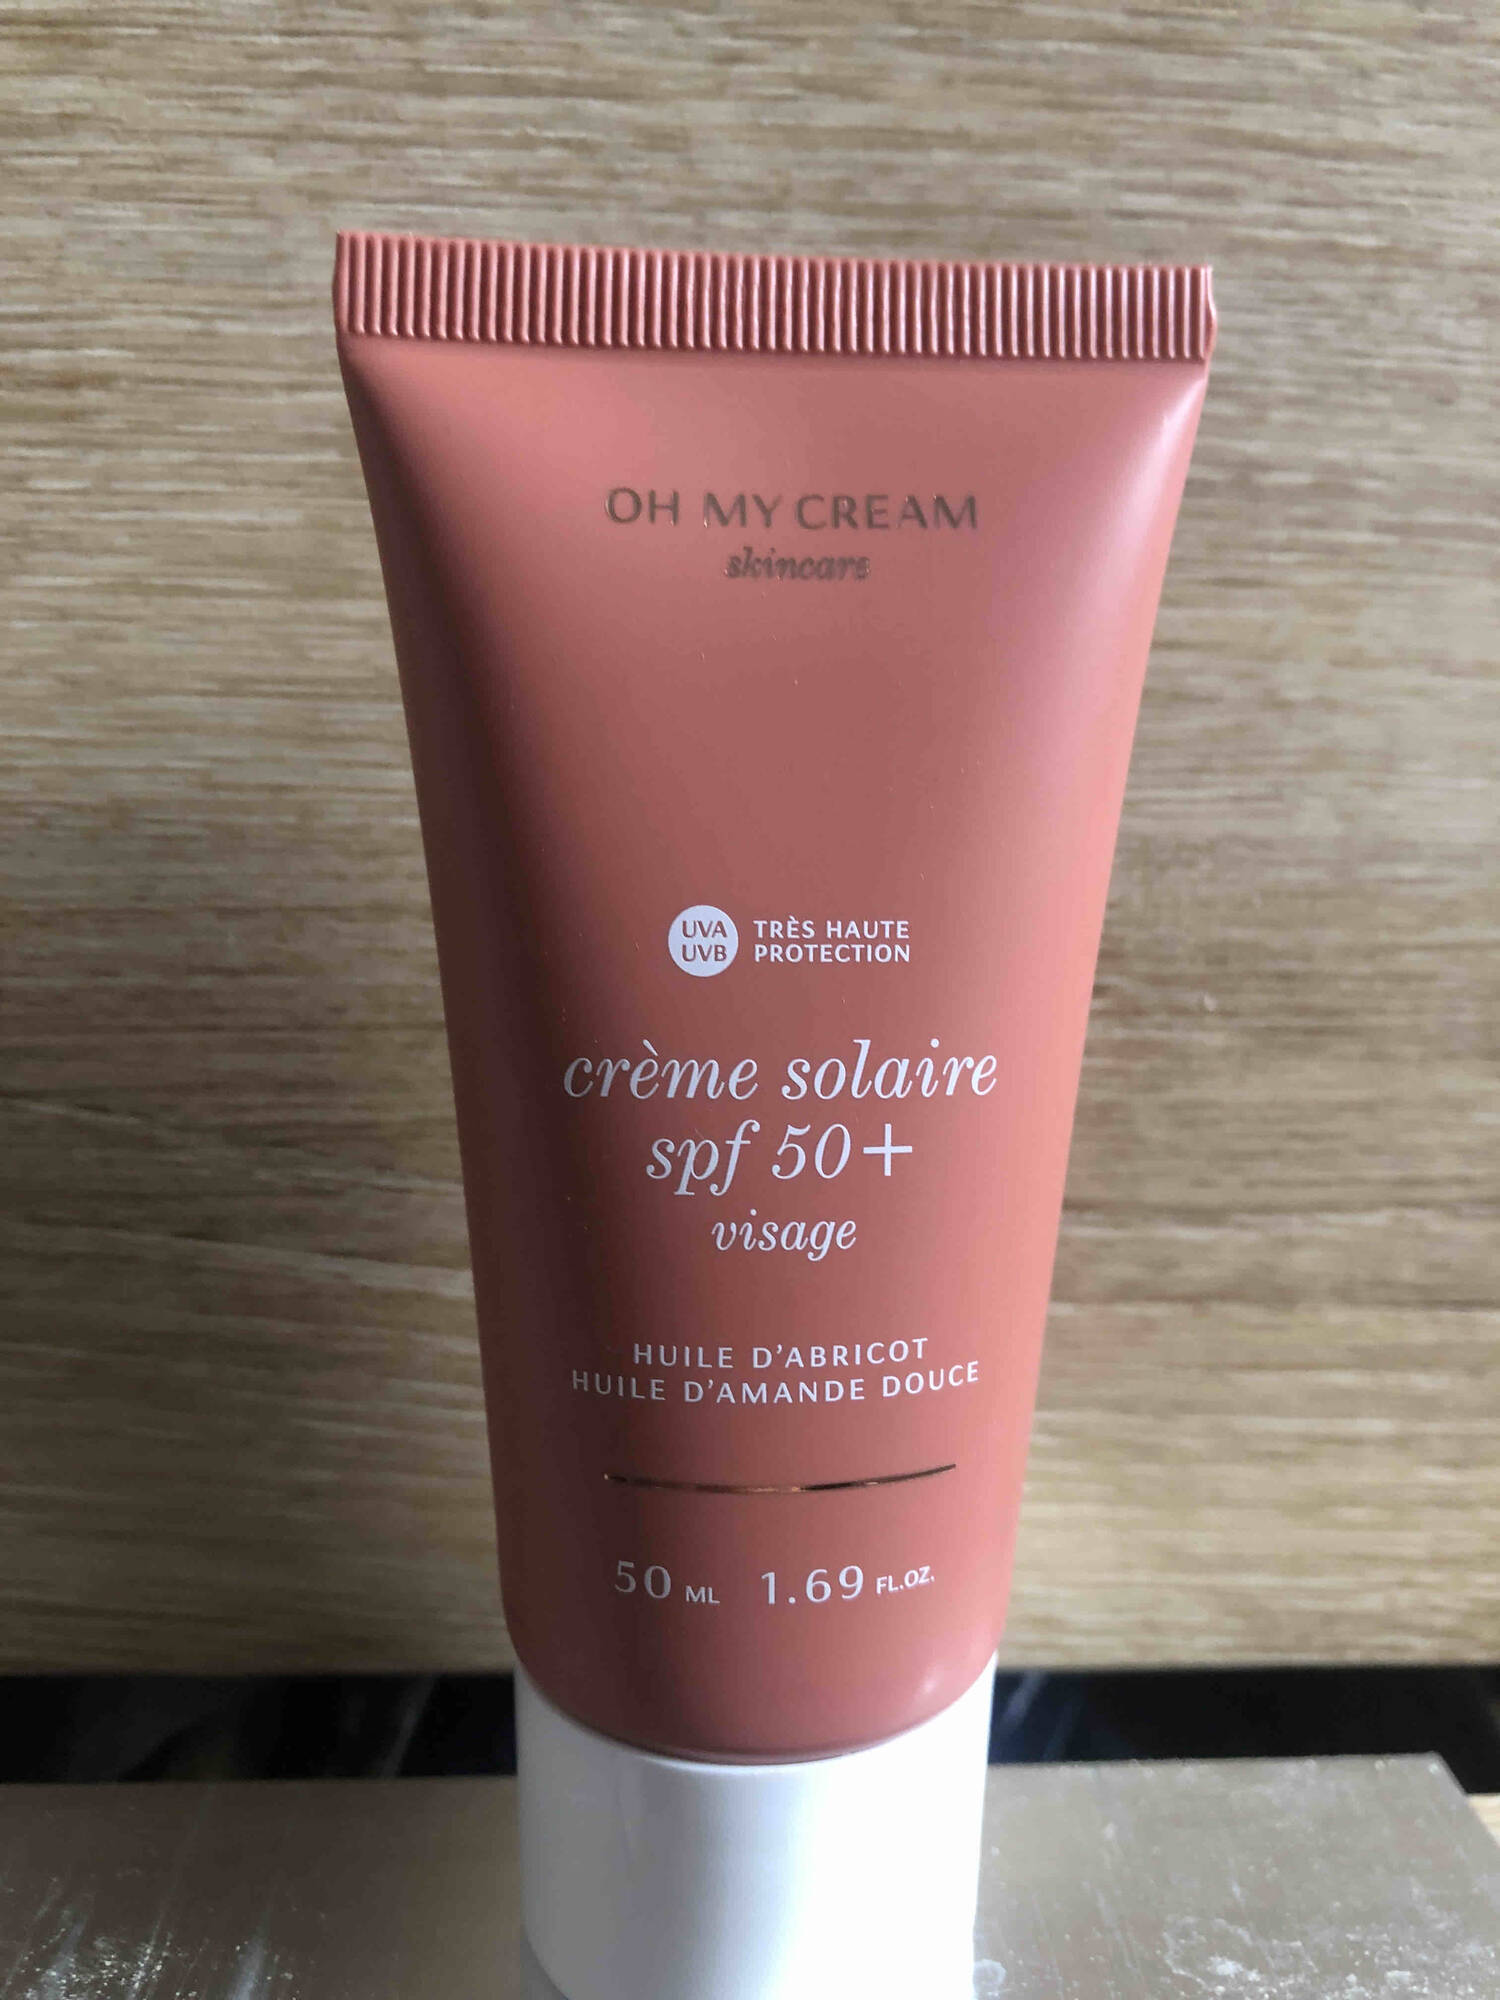 OH MY CREAM - Crème solaire visage SPF 50+